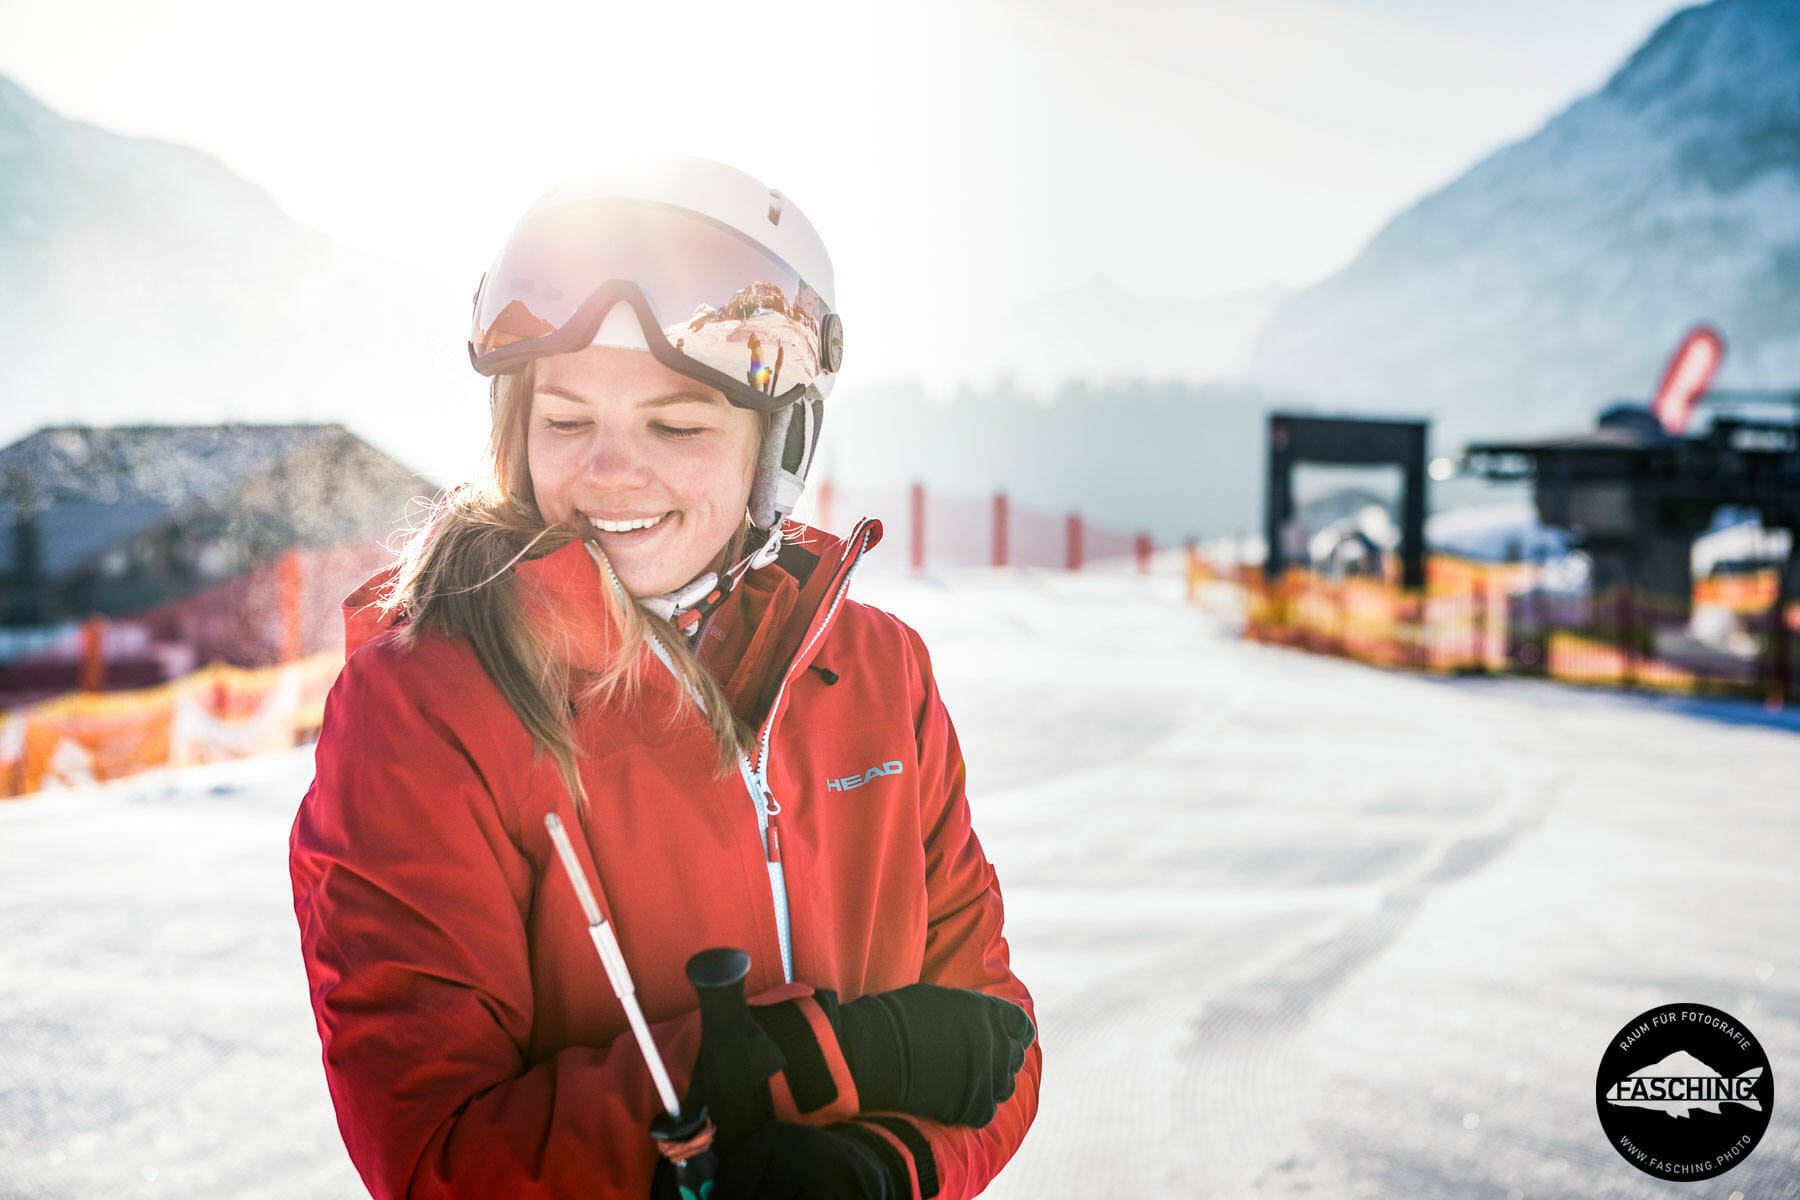 Imagebilder der Winterprodukte von Head fotografierte unser Team Fasching im vorarlberger Skigebiet in Warth Schröcken